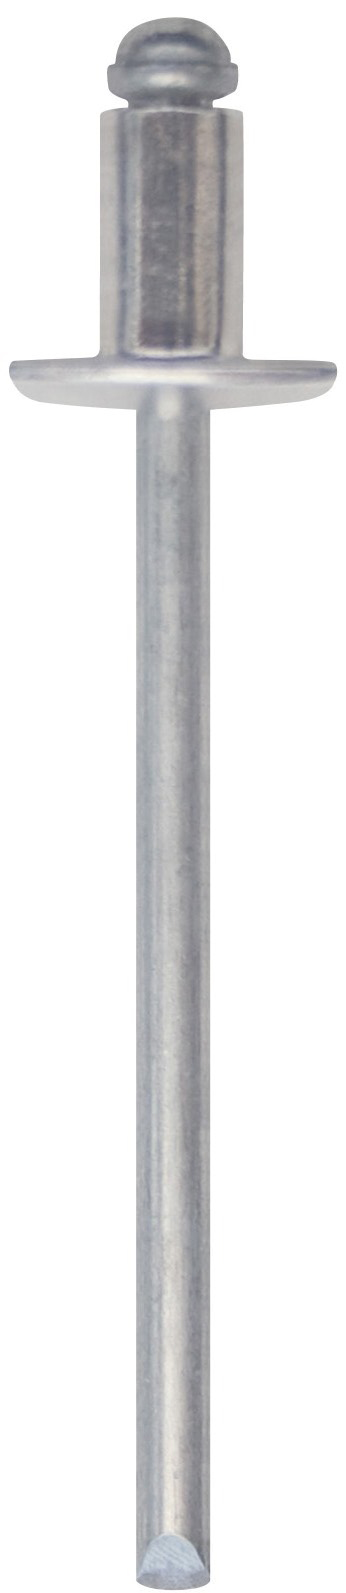 Cod. 0300004003000 - RIVEX Rivetto in alluminio